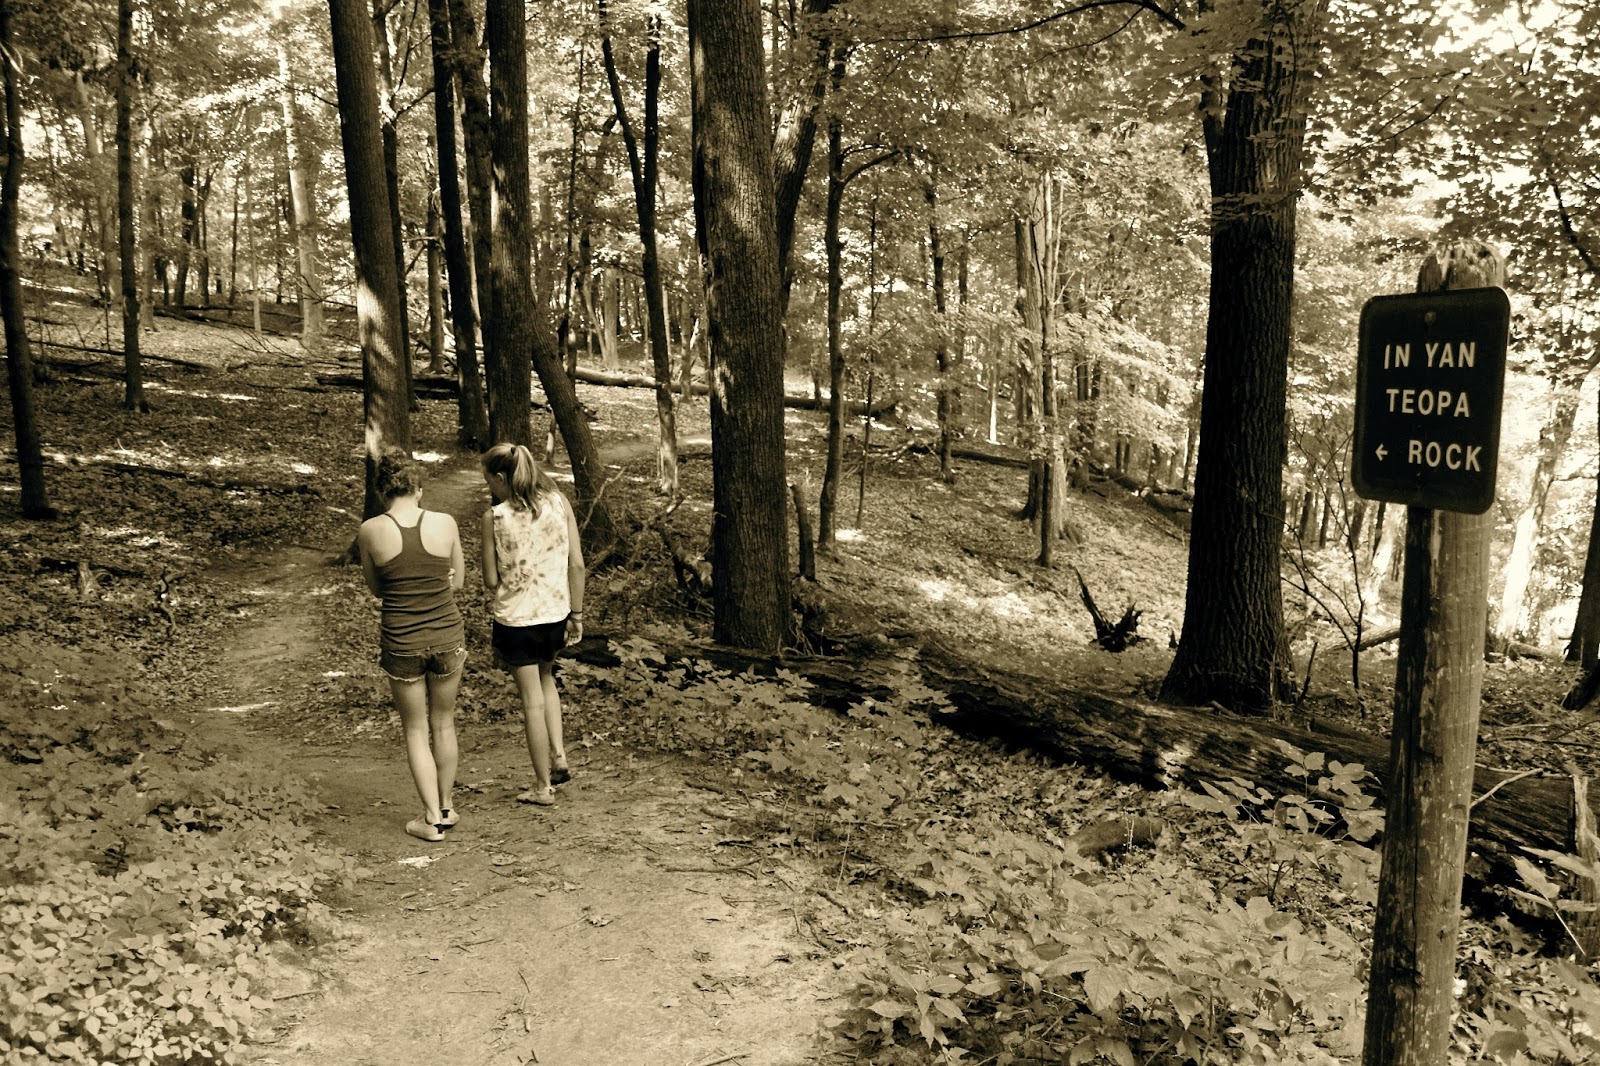 Russman's spot: Hiking in Frontenac State Park - In Yan Teopa Rock